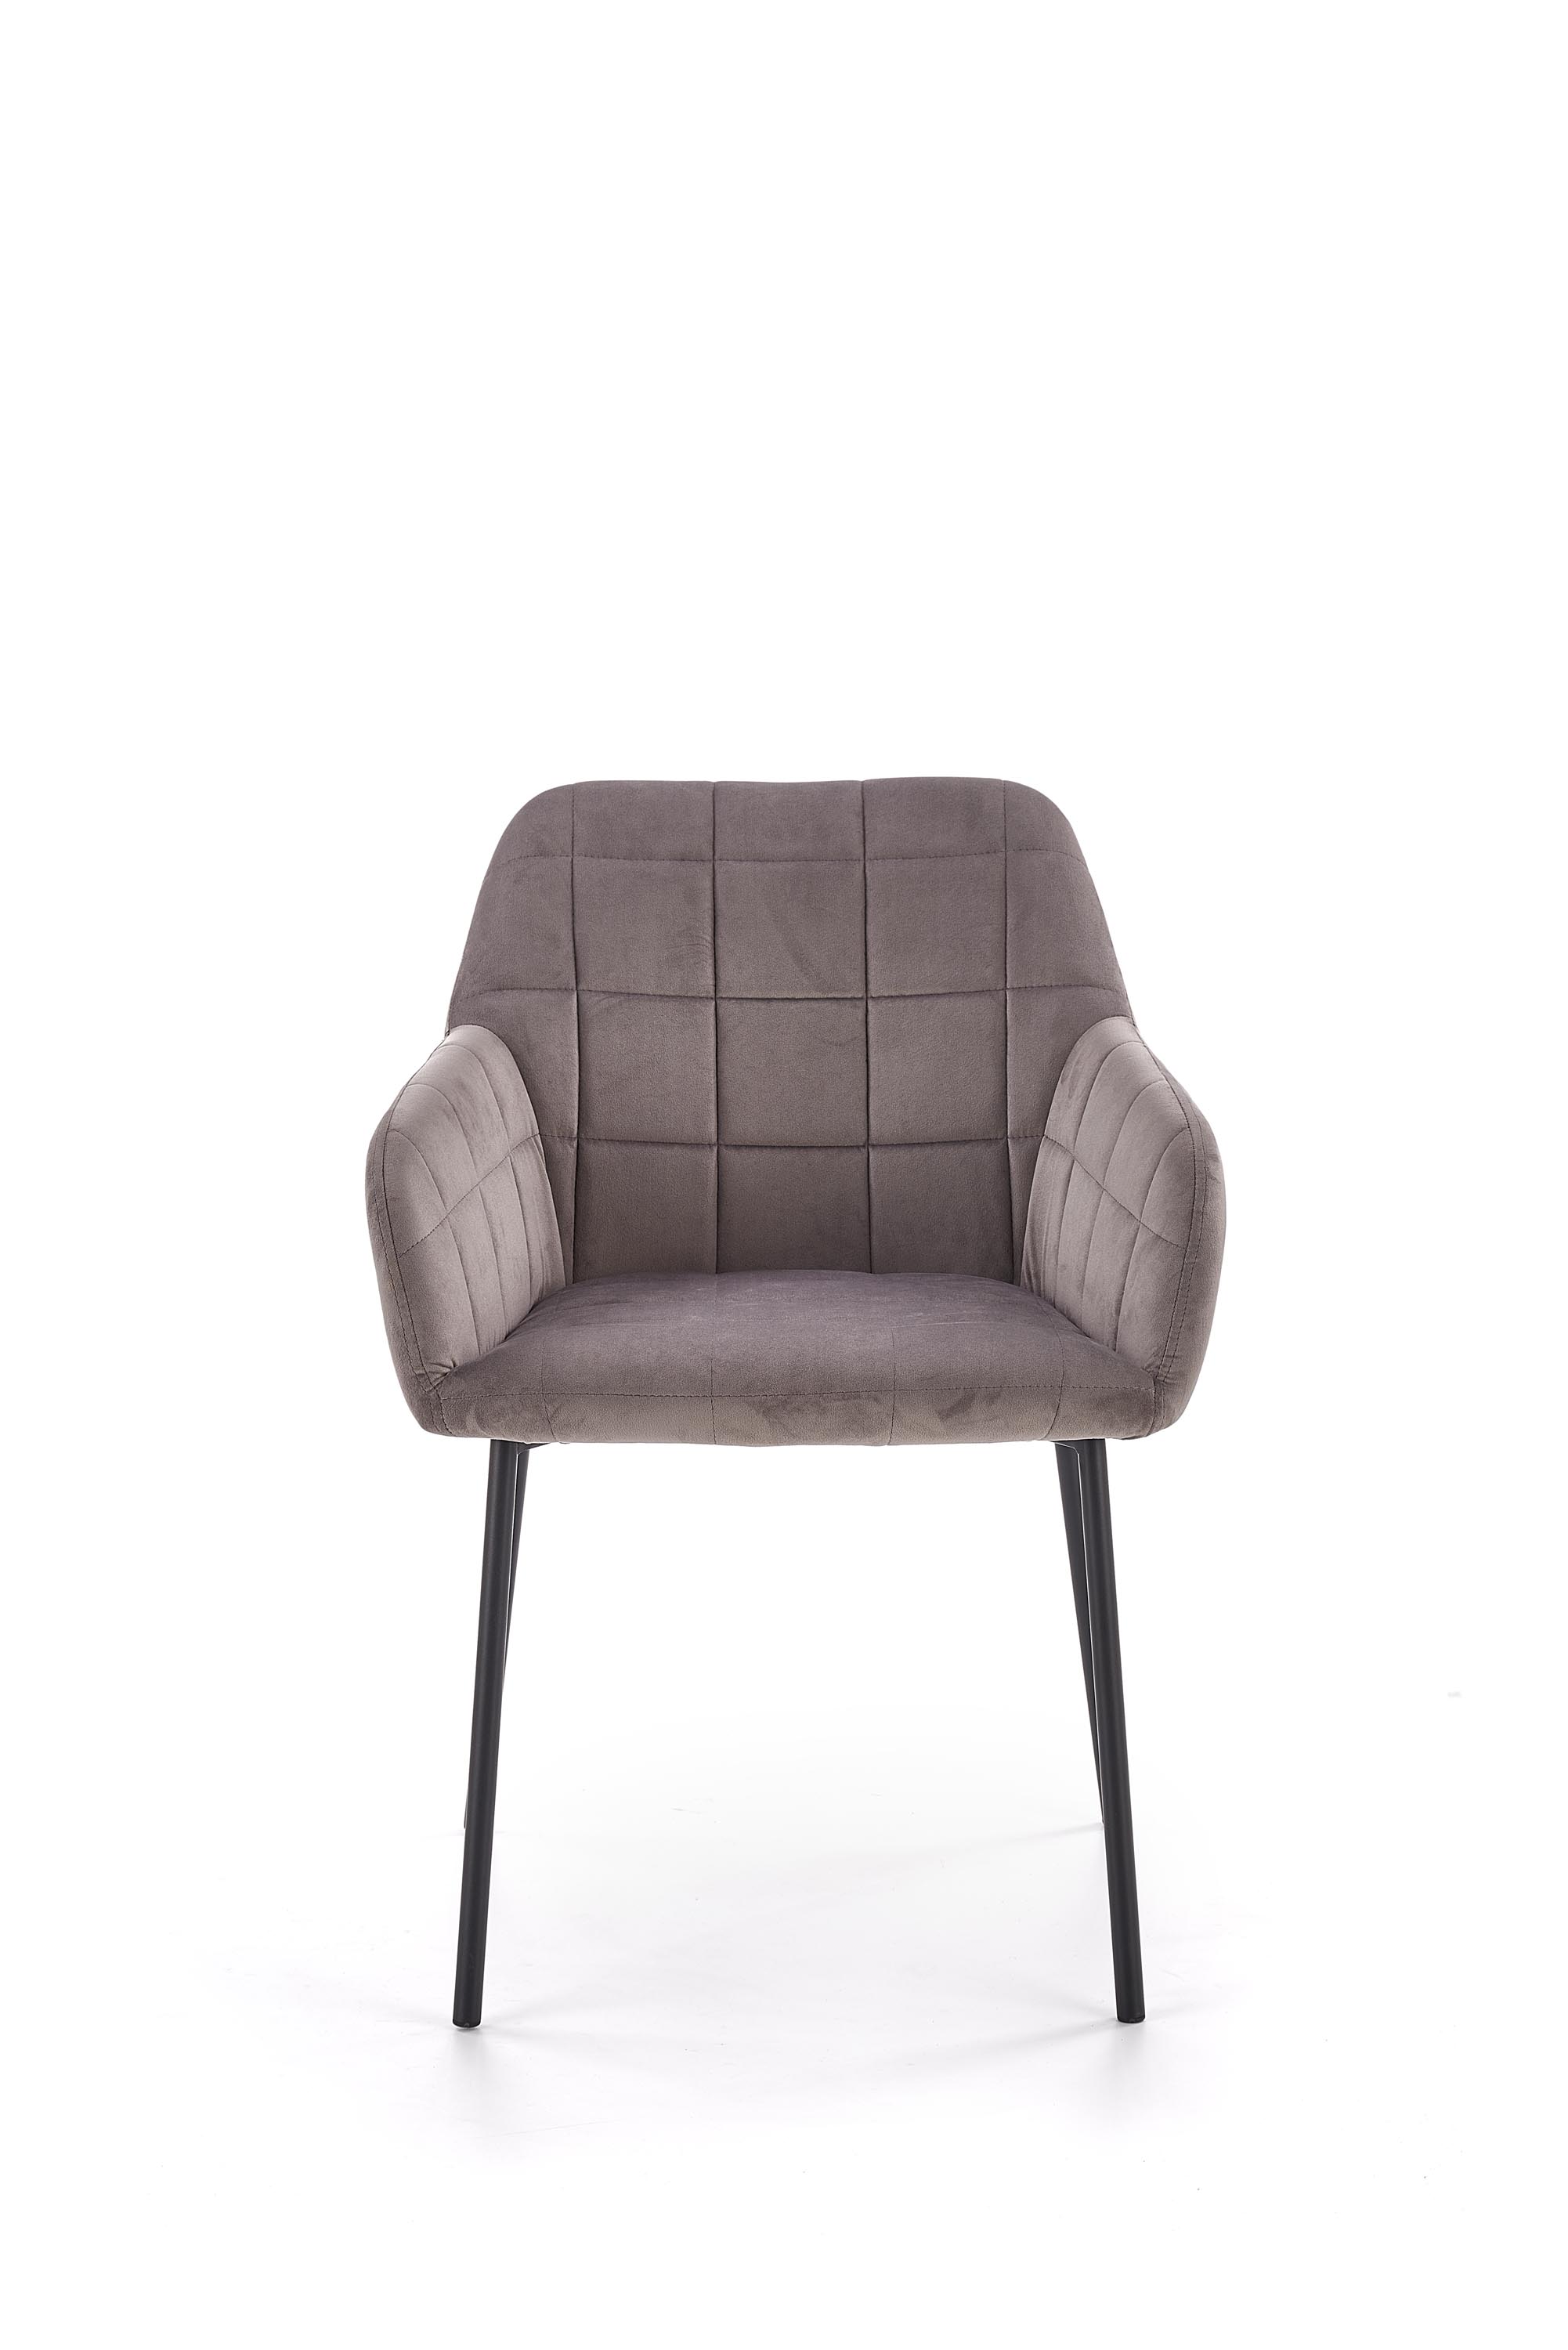 Židle K305 - Popelový / Fekete Židle k305 - Popelový / Fekete